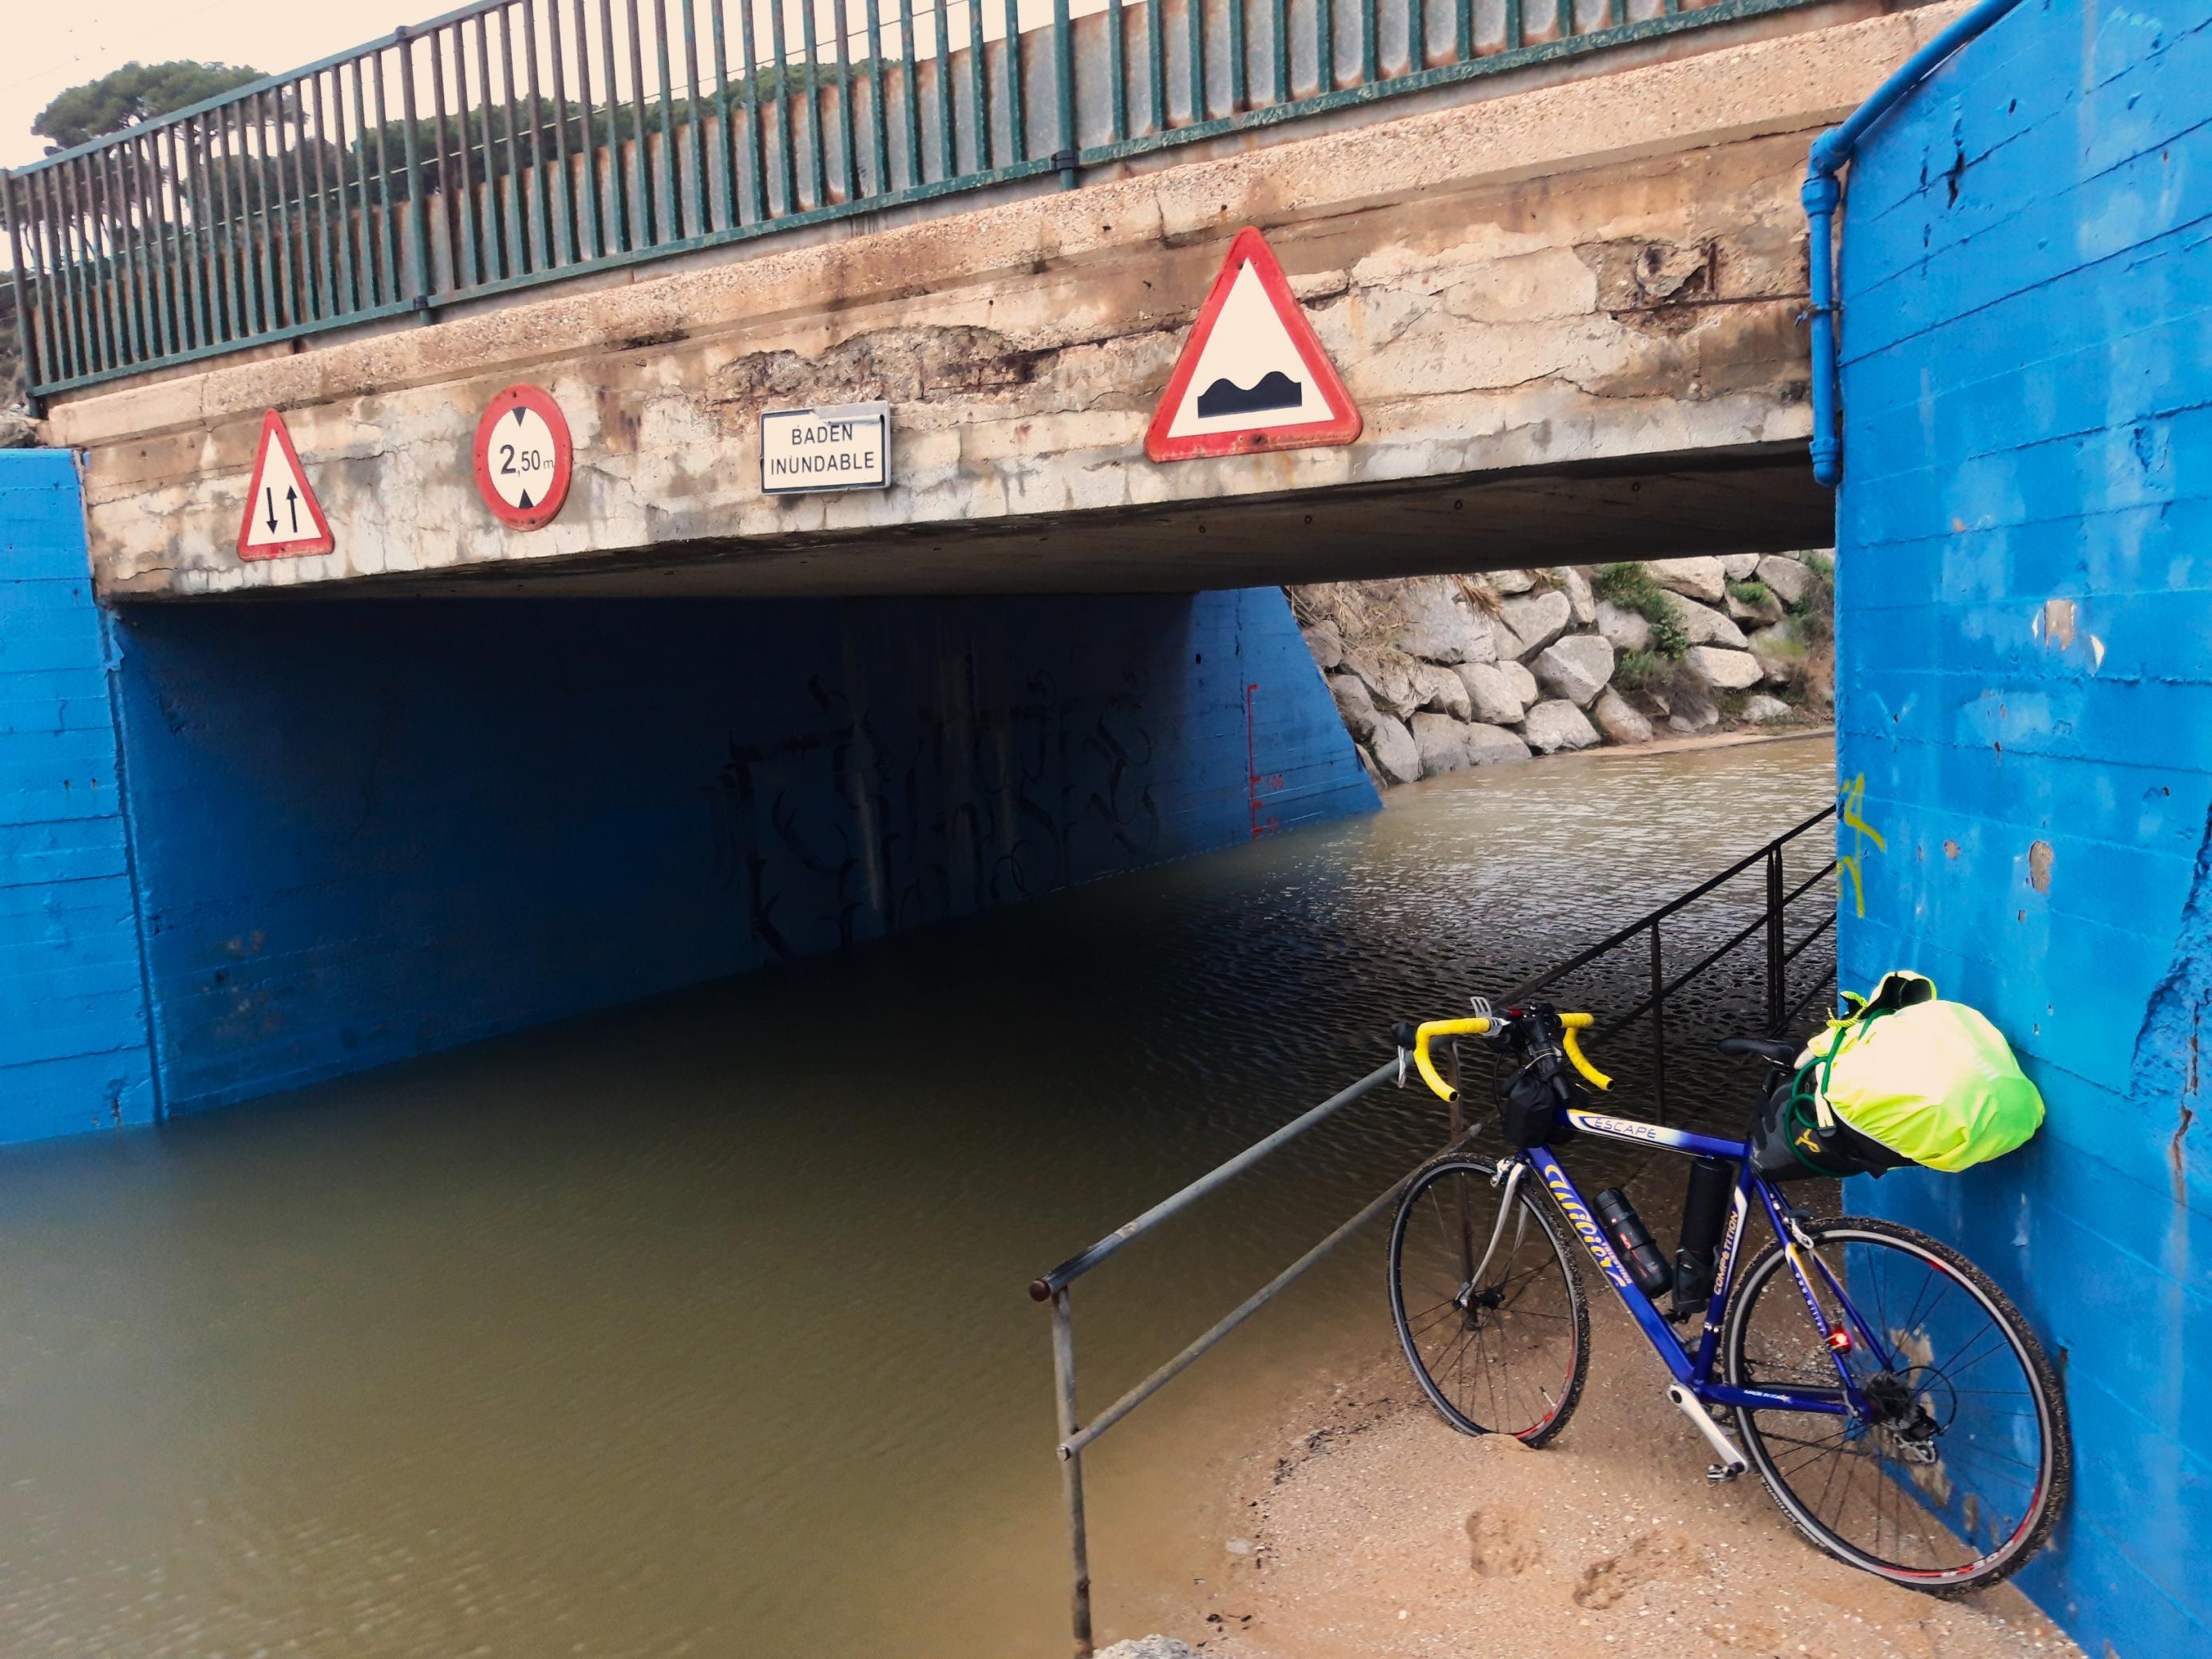 Das Rennrad des Reporters lehnt neben dem überschwemmten Sträßchen an einer Mauer, über der an der Betonüberführung das Schild prangt „Badén inundable“.